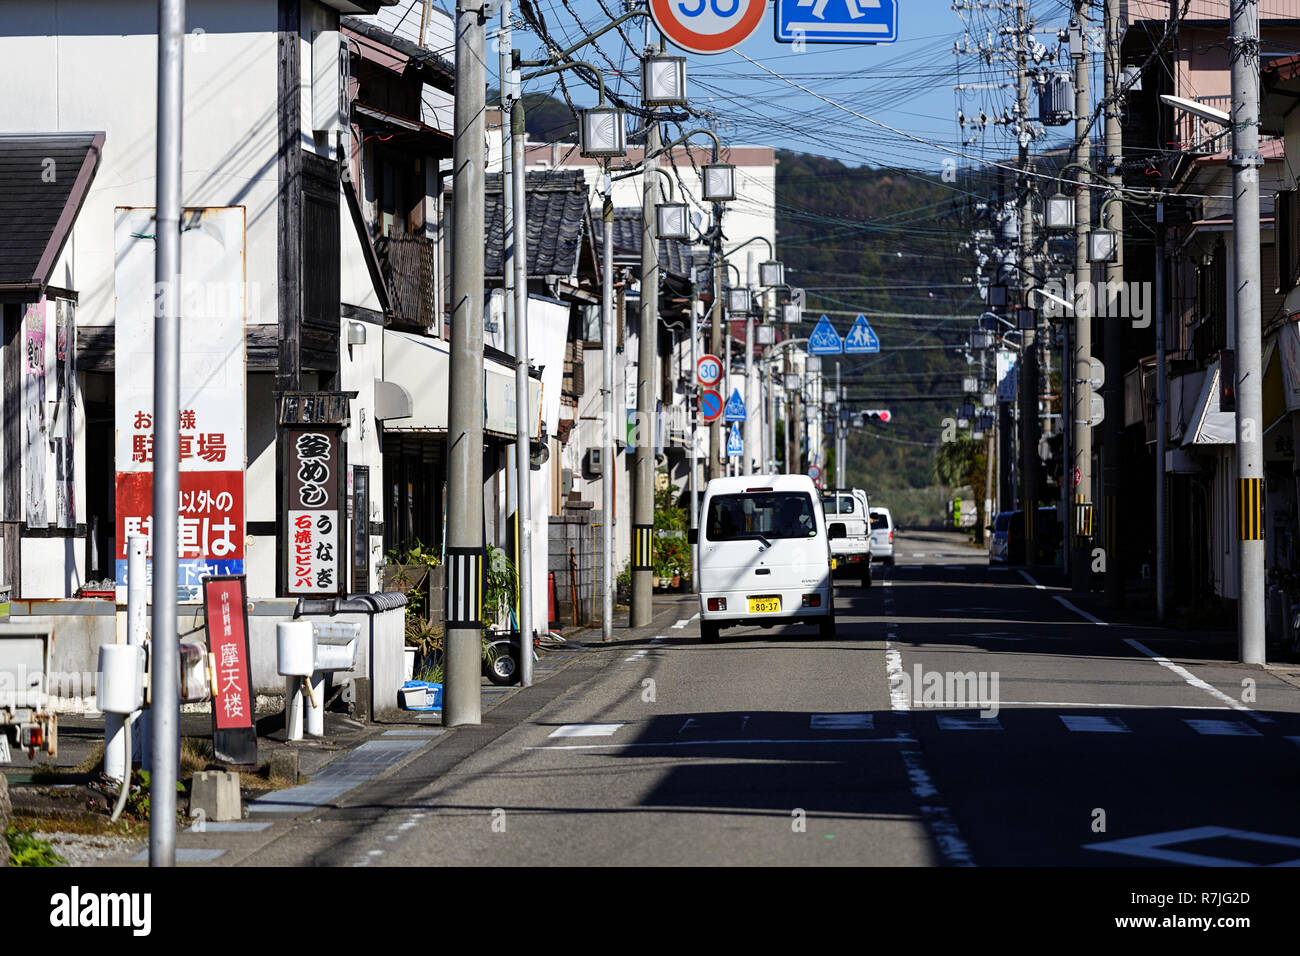 Street scene in town of Katsuura, Wakayama, Japan Stock Photo